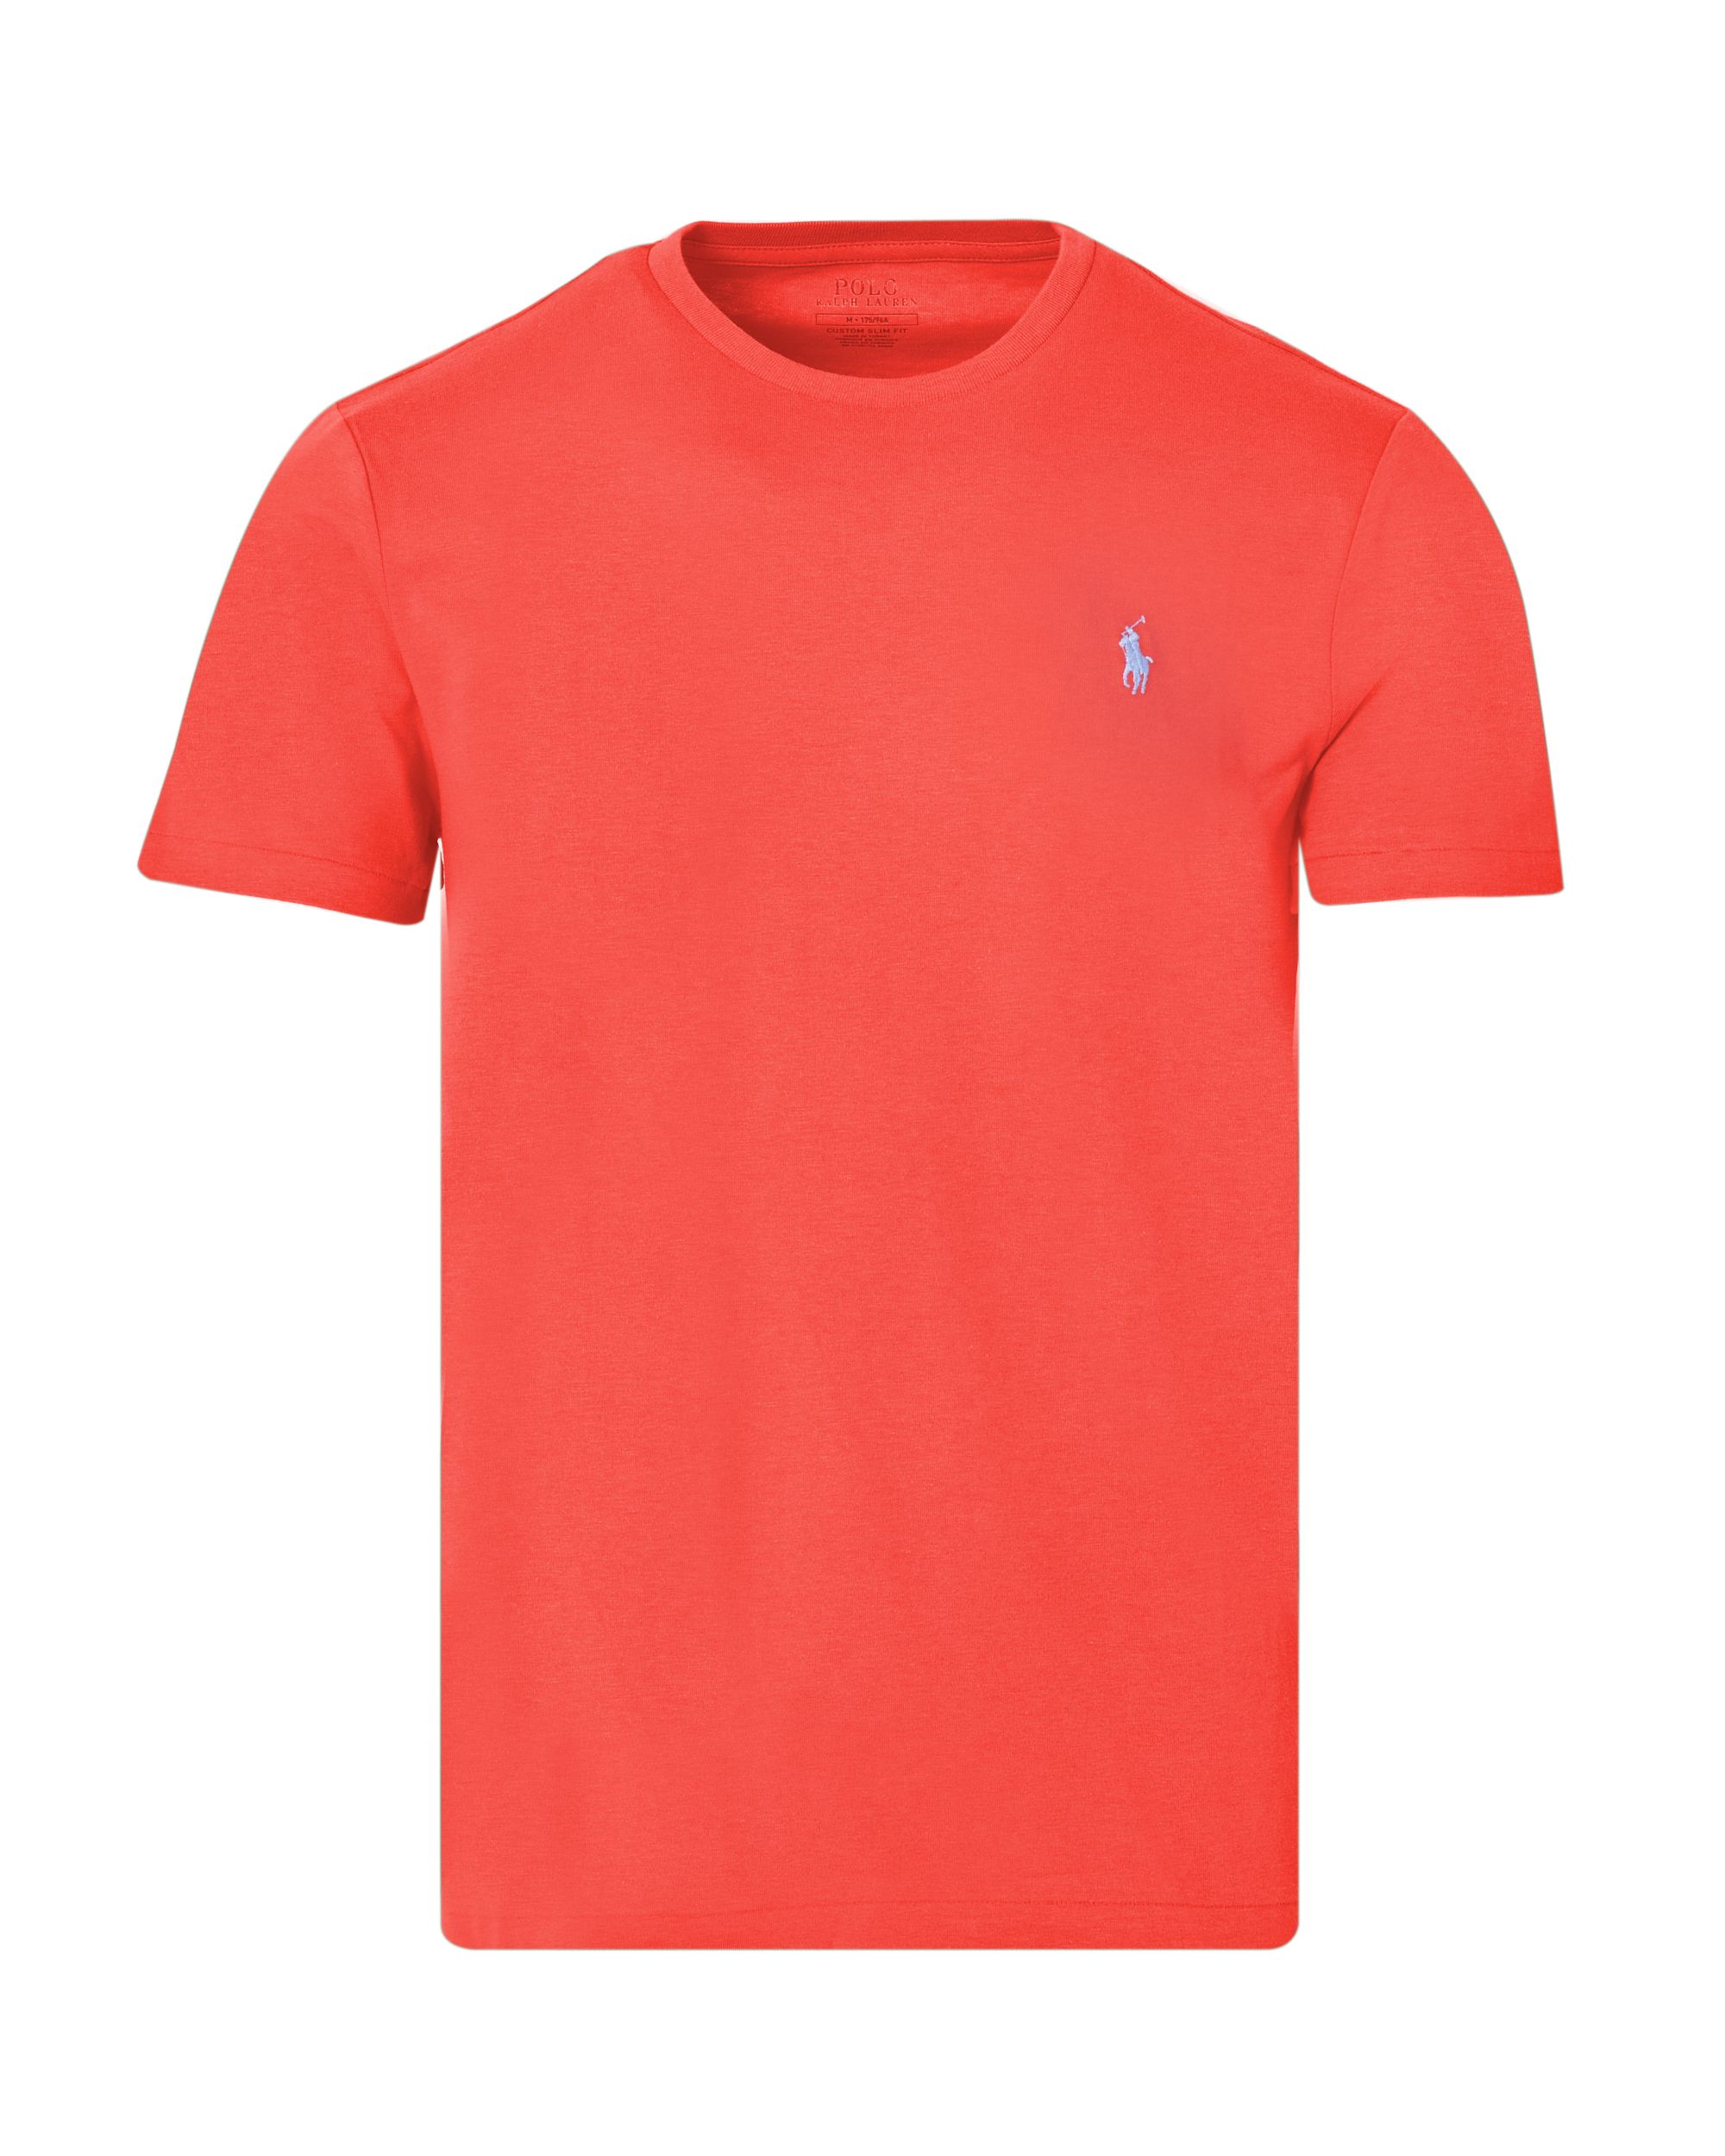 Polo Ralph Lauren T-shirt KM Rood 083438-001-L